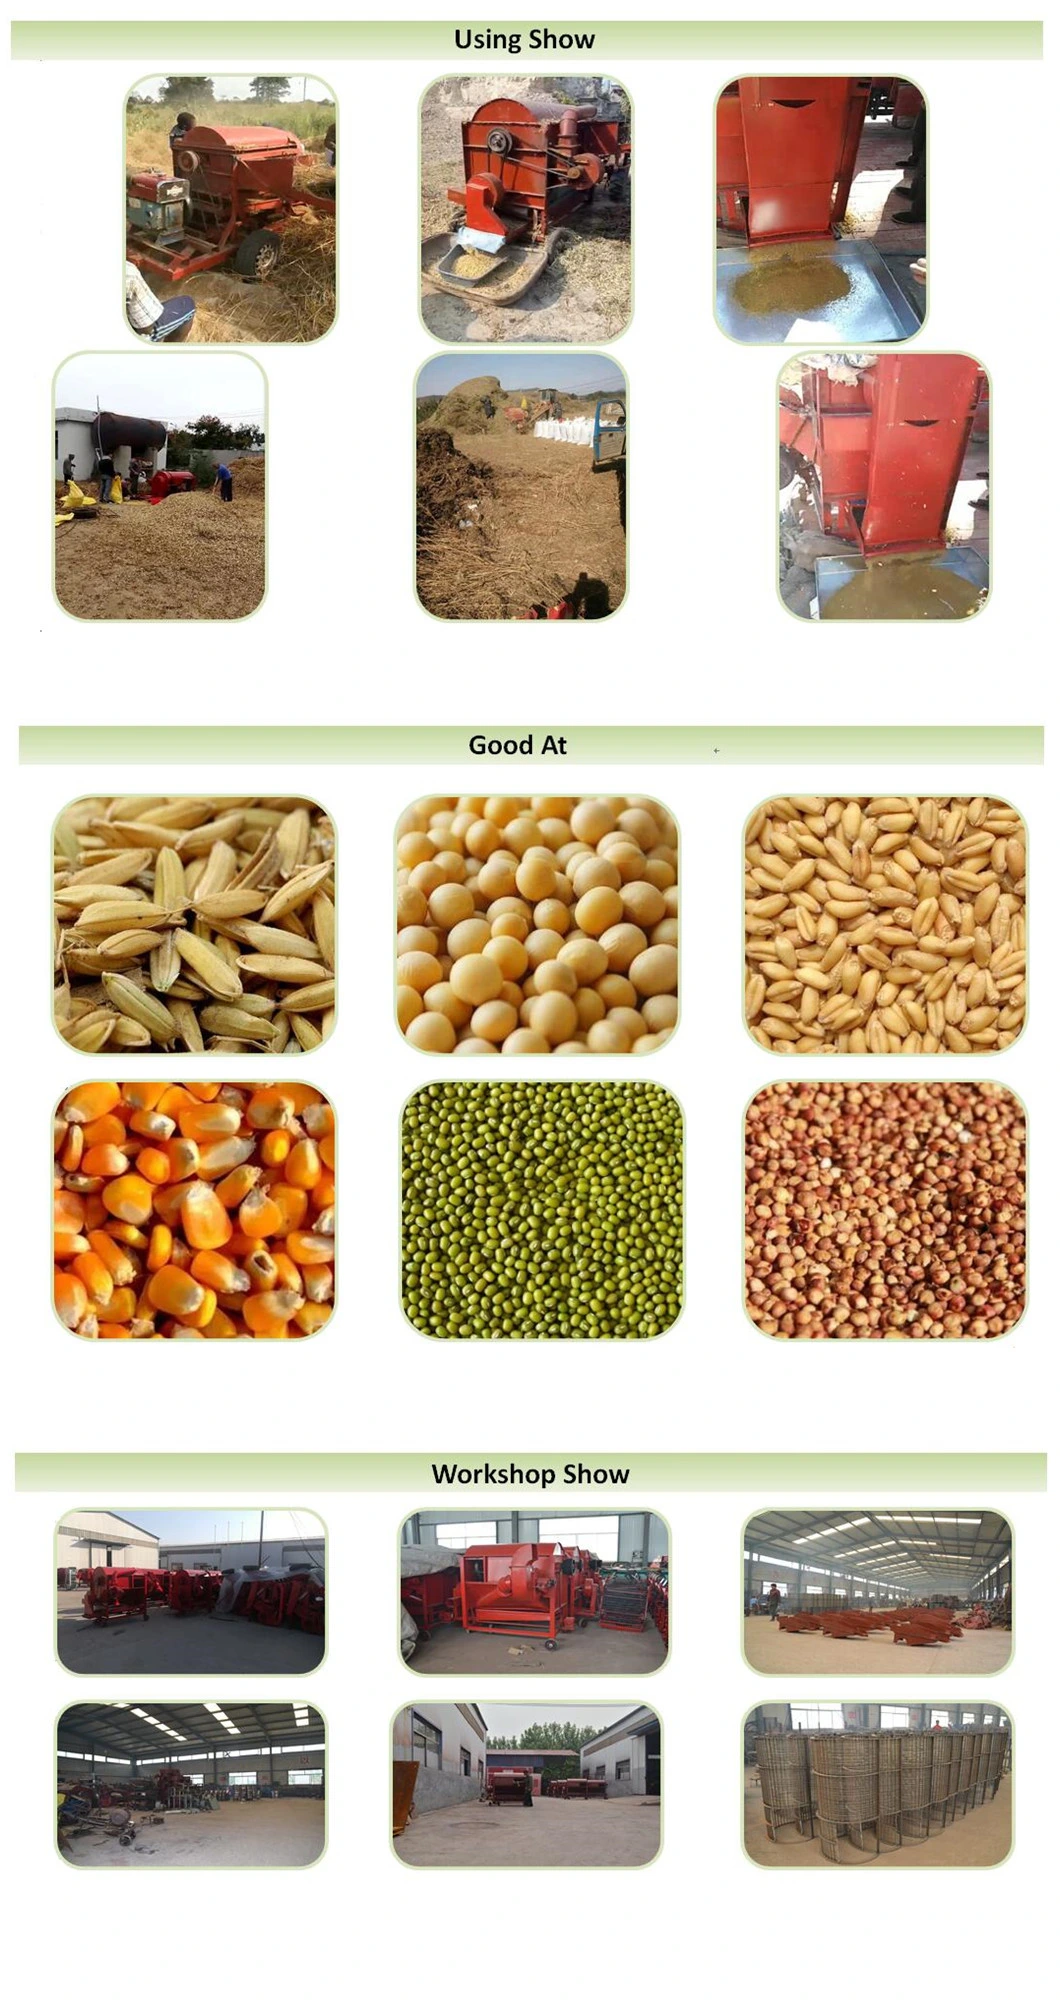 Wheat Rice Paddy Threshing Machine / Soybean Sesame Hulling Machine / Oat Barley Shelling Machine